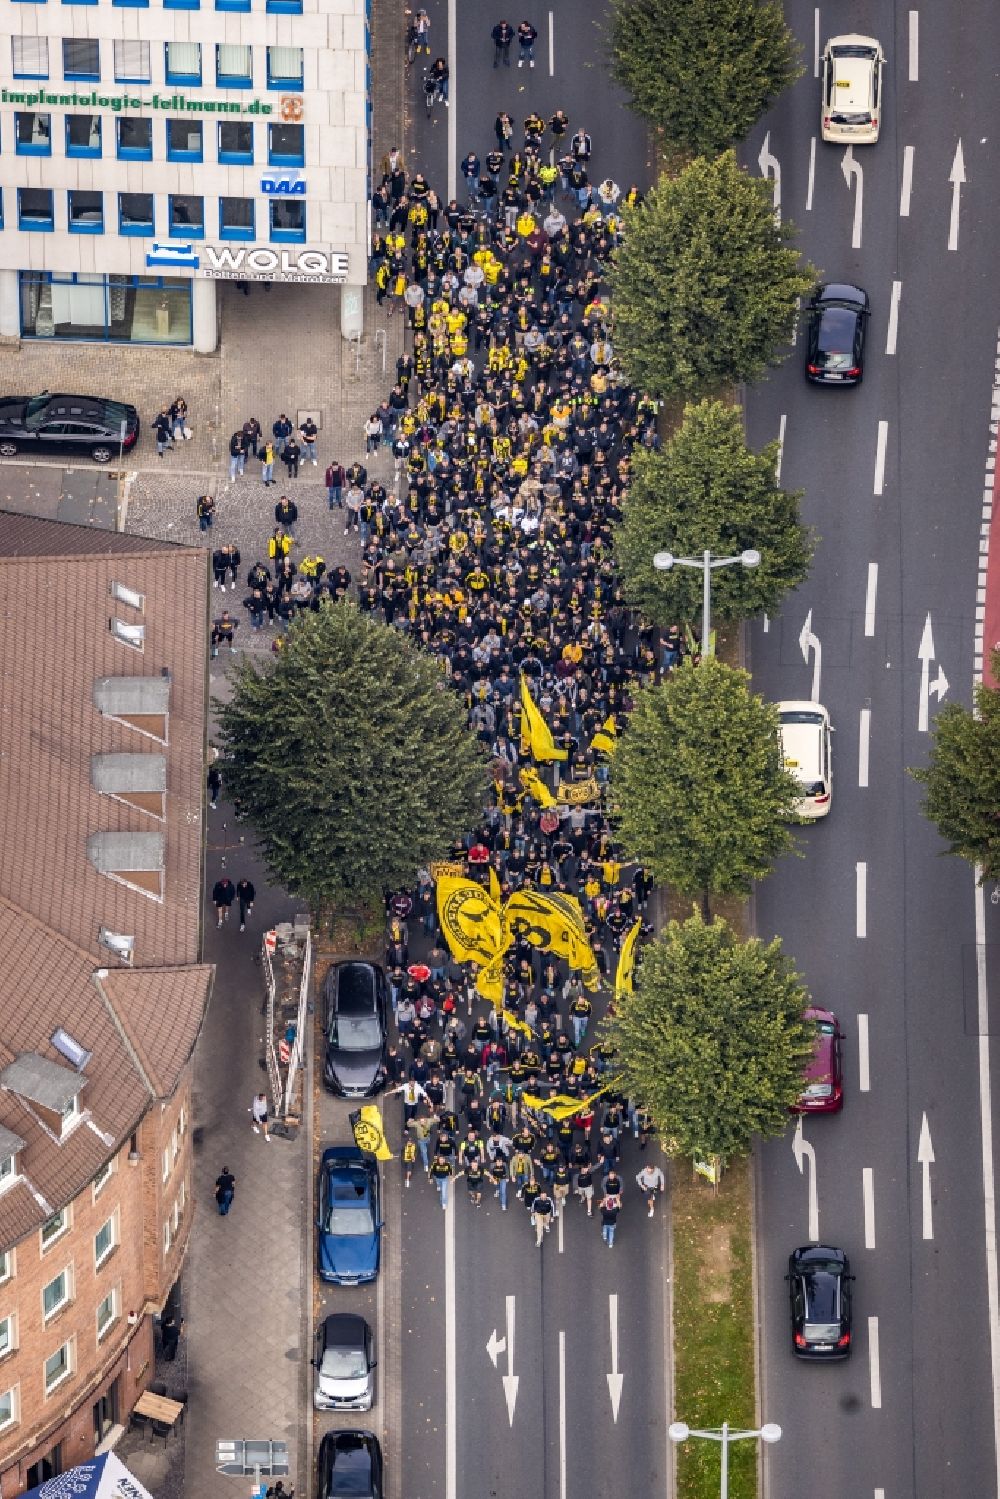 Luftbild Dortmund - Fans des Fußballvereins BVB auf dem Weg zum Fußballspiel an der Poststraße Ecke Hohe Straße Musik- Festival in Dortmund im Bundesland Nordrhein-Westfalen, Deutschland